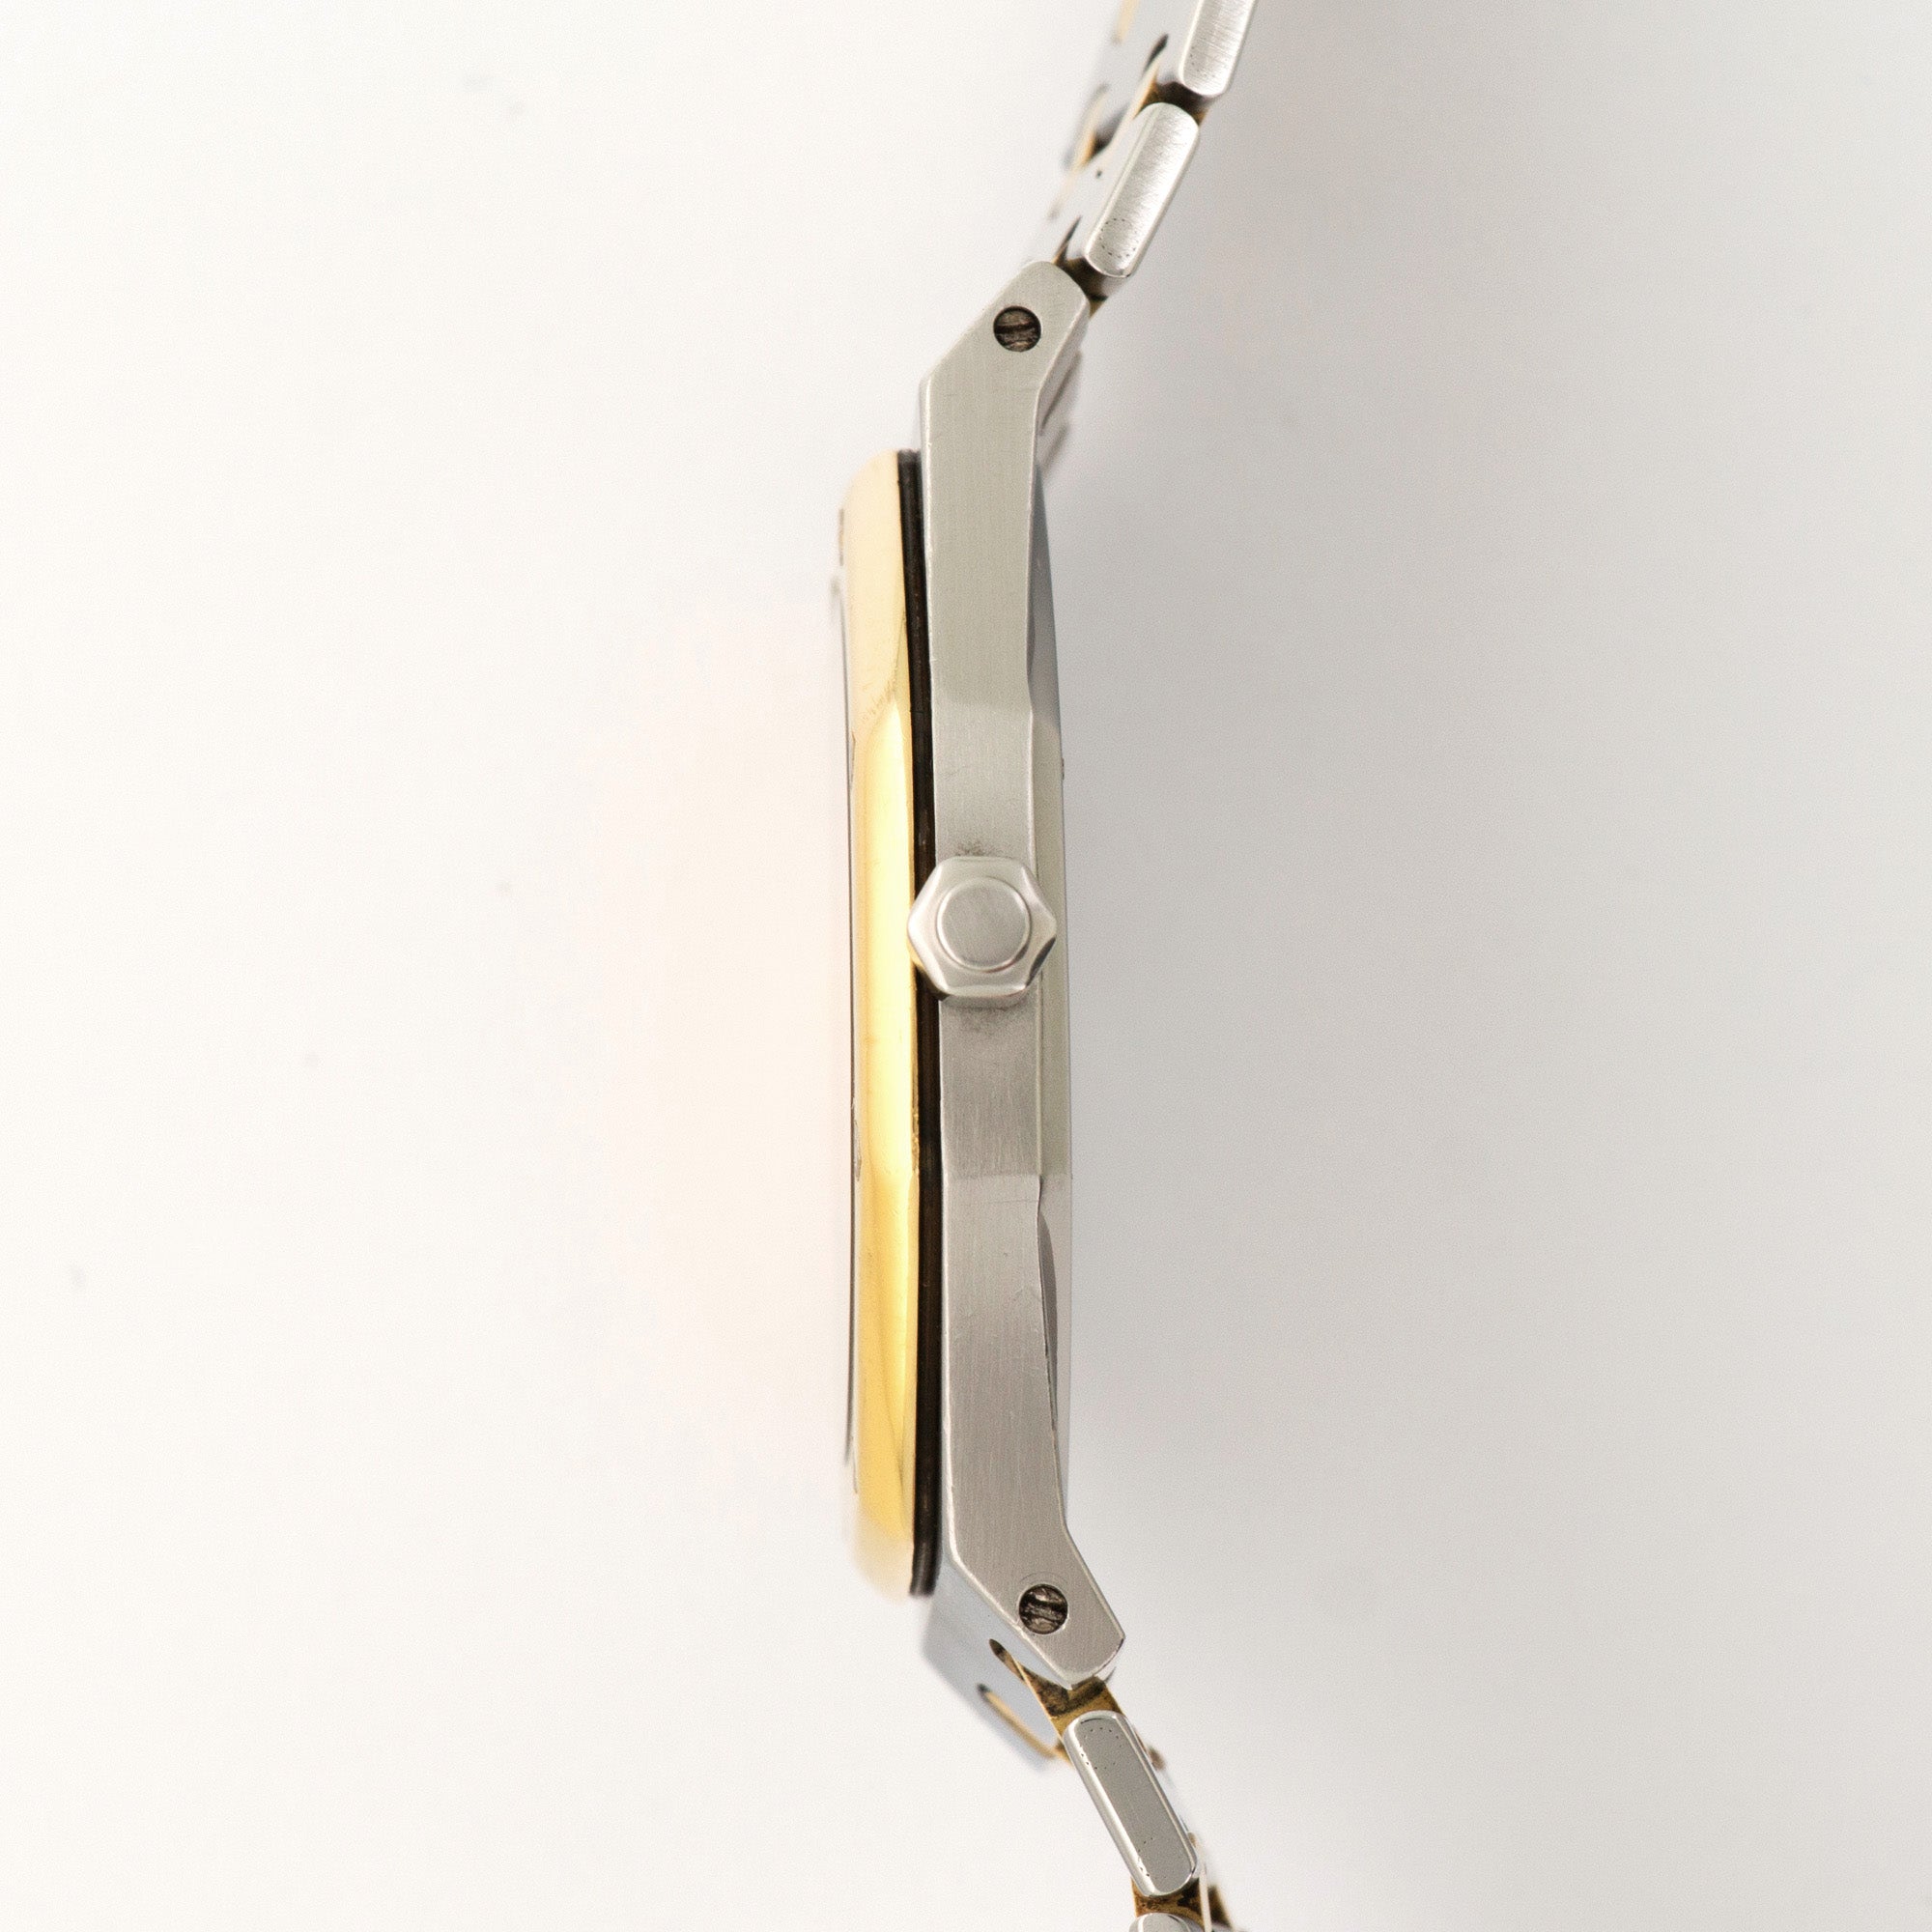 Audemars Piguet - Audemars Piguet Two-Tone Royal Oak Watch Ref. 5402 - The Keystone Watches